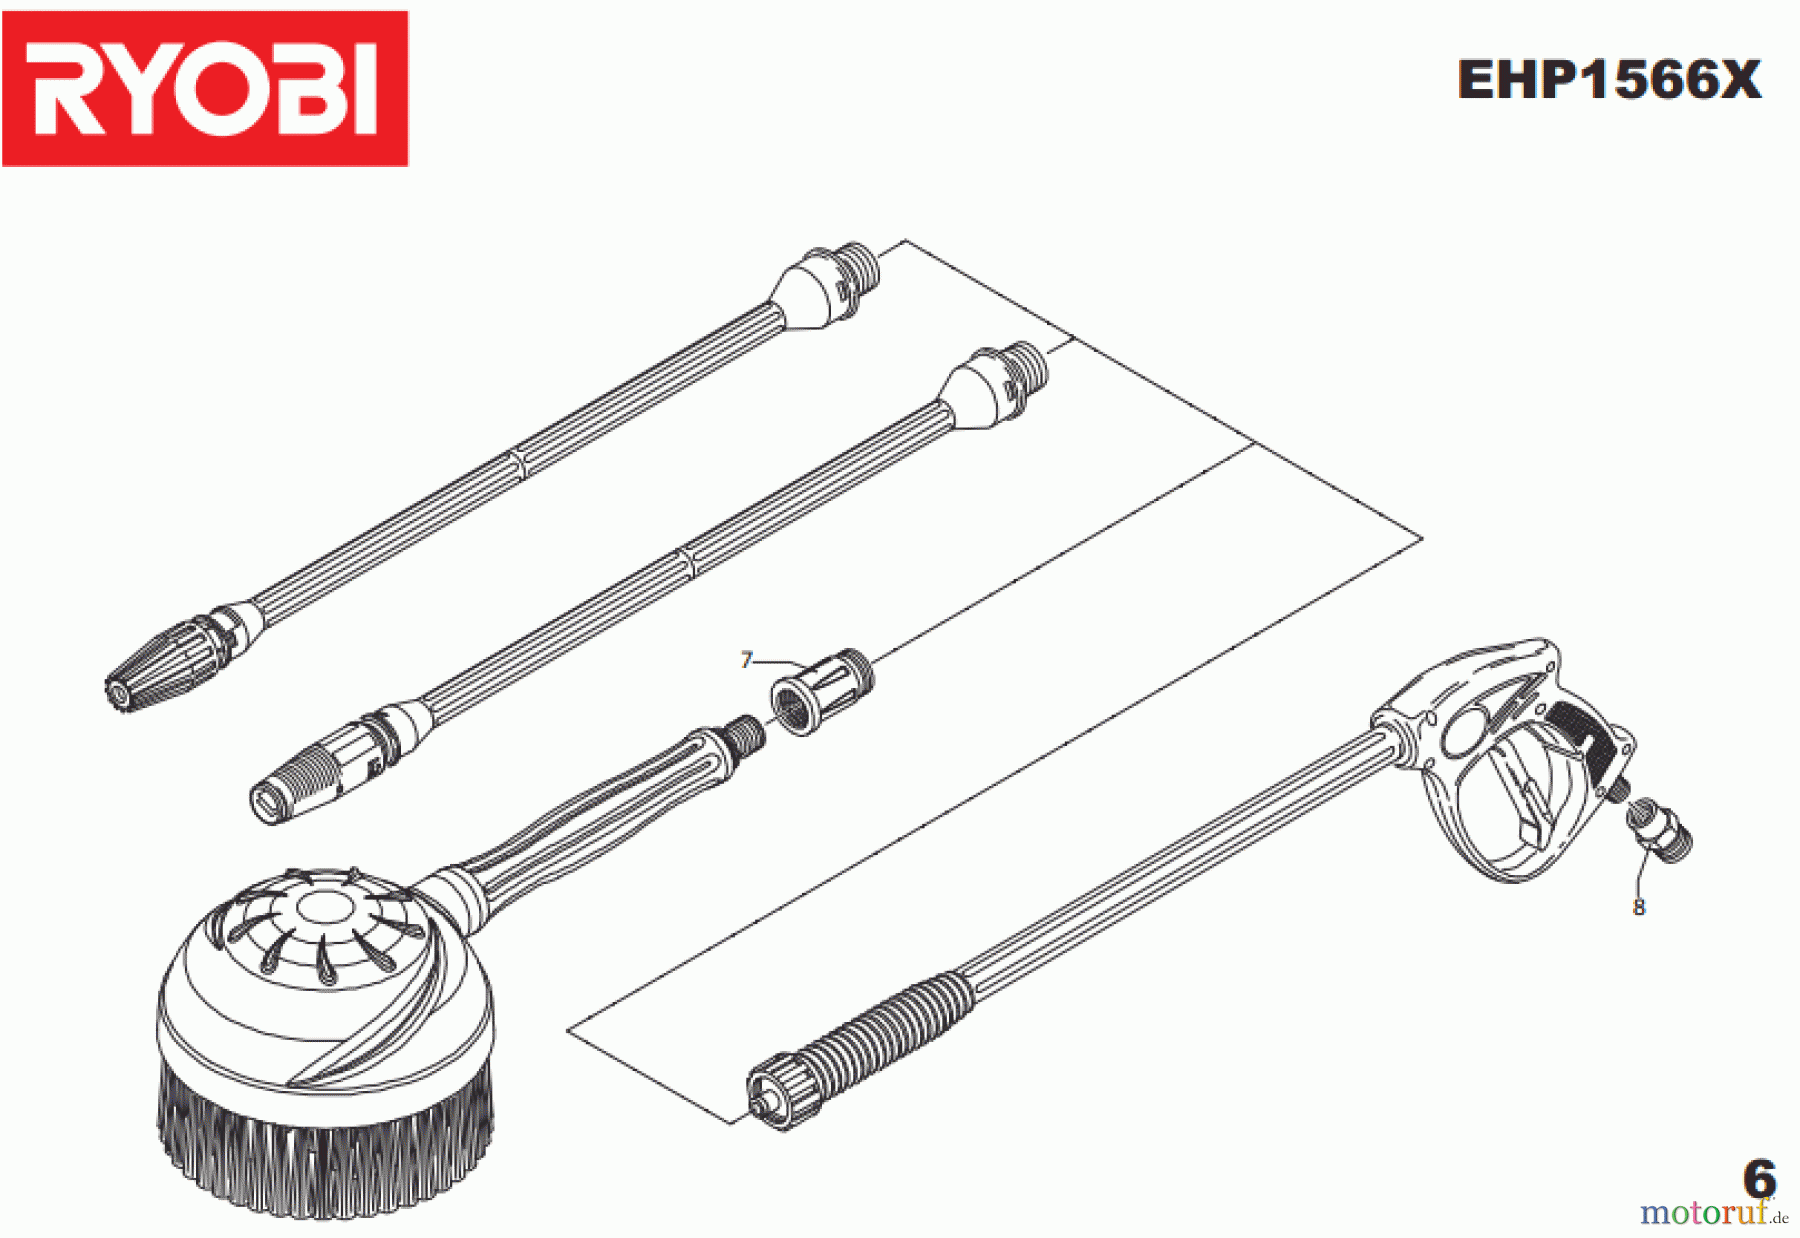  Ryobi Hochdruckreiniger EHP1566X Seite6